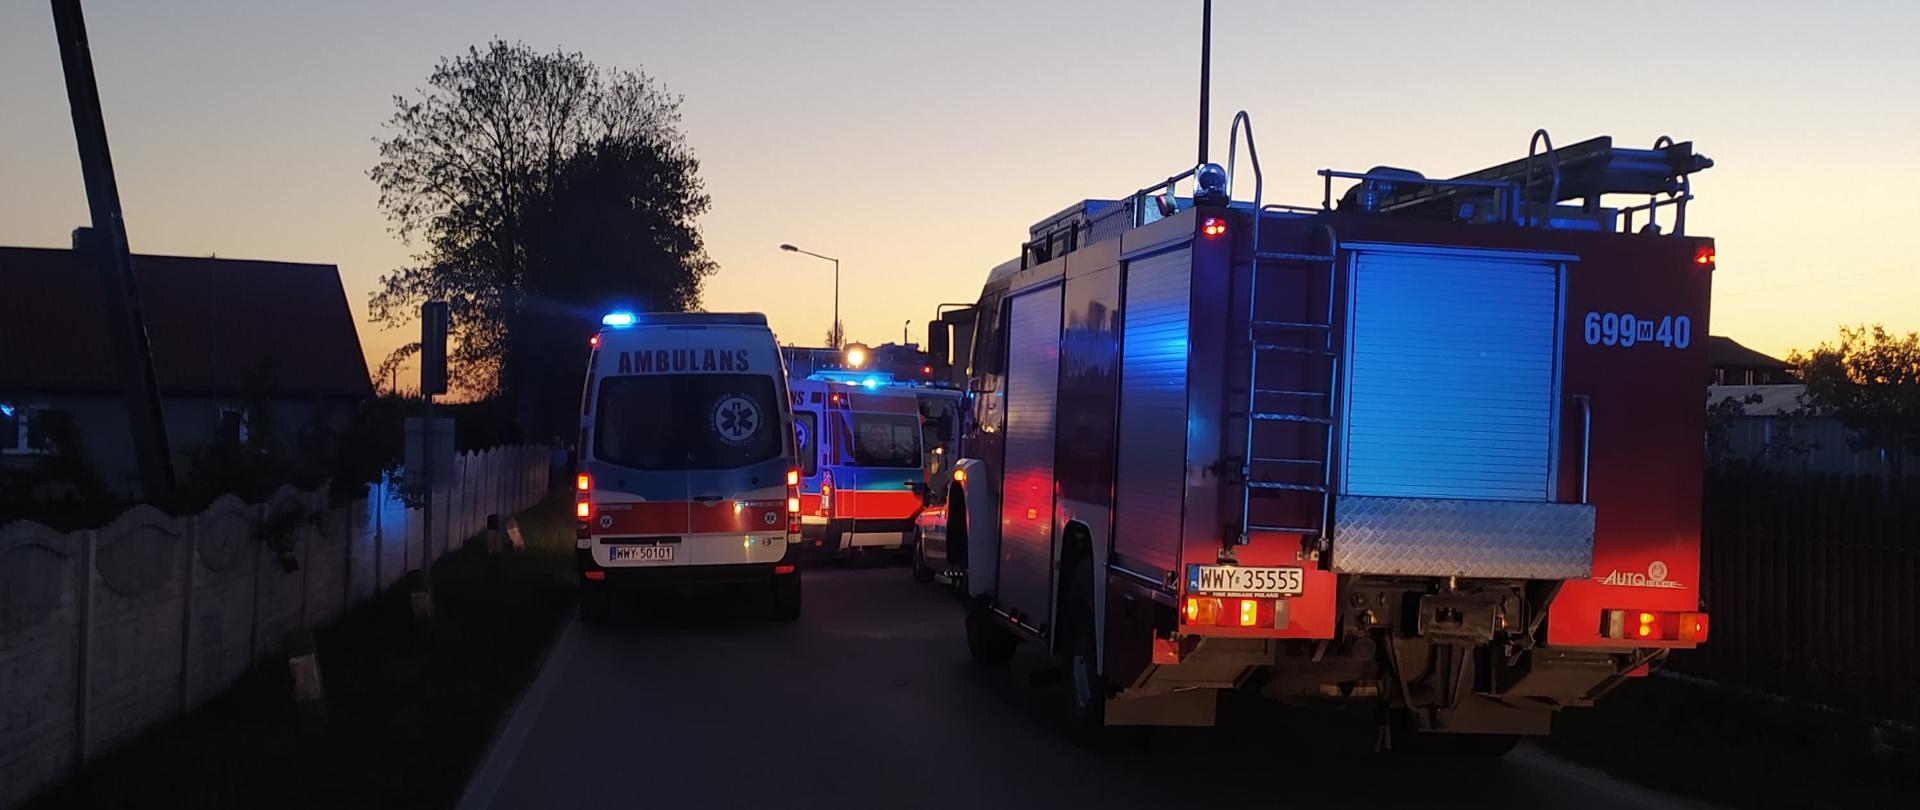 Dwie karetki pogotowia oraz pojazd pożarniczy stojące na ulicy, przy której miał miejsce pożar domu.